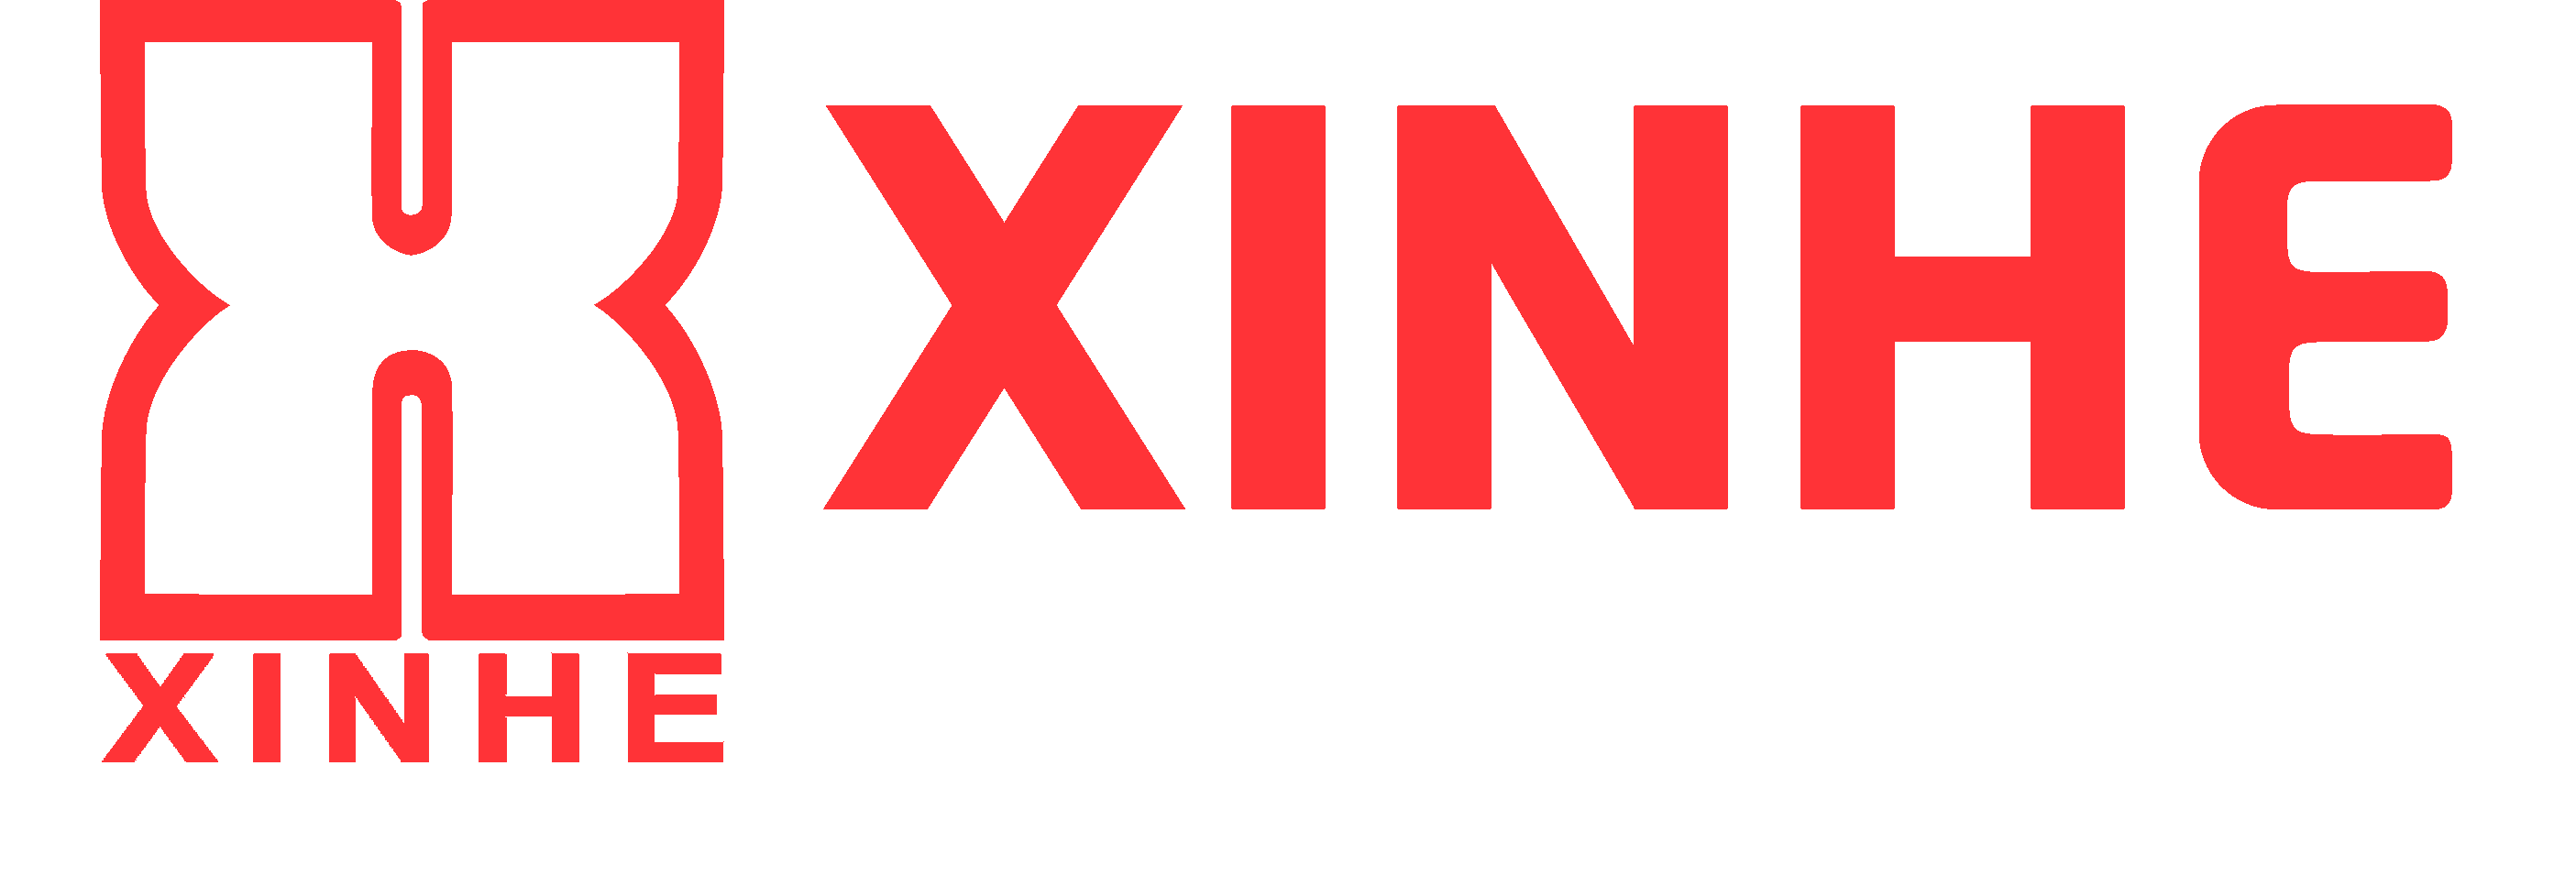 XINHE GLOBAL LOGISTICS Logo